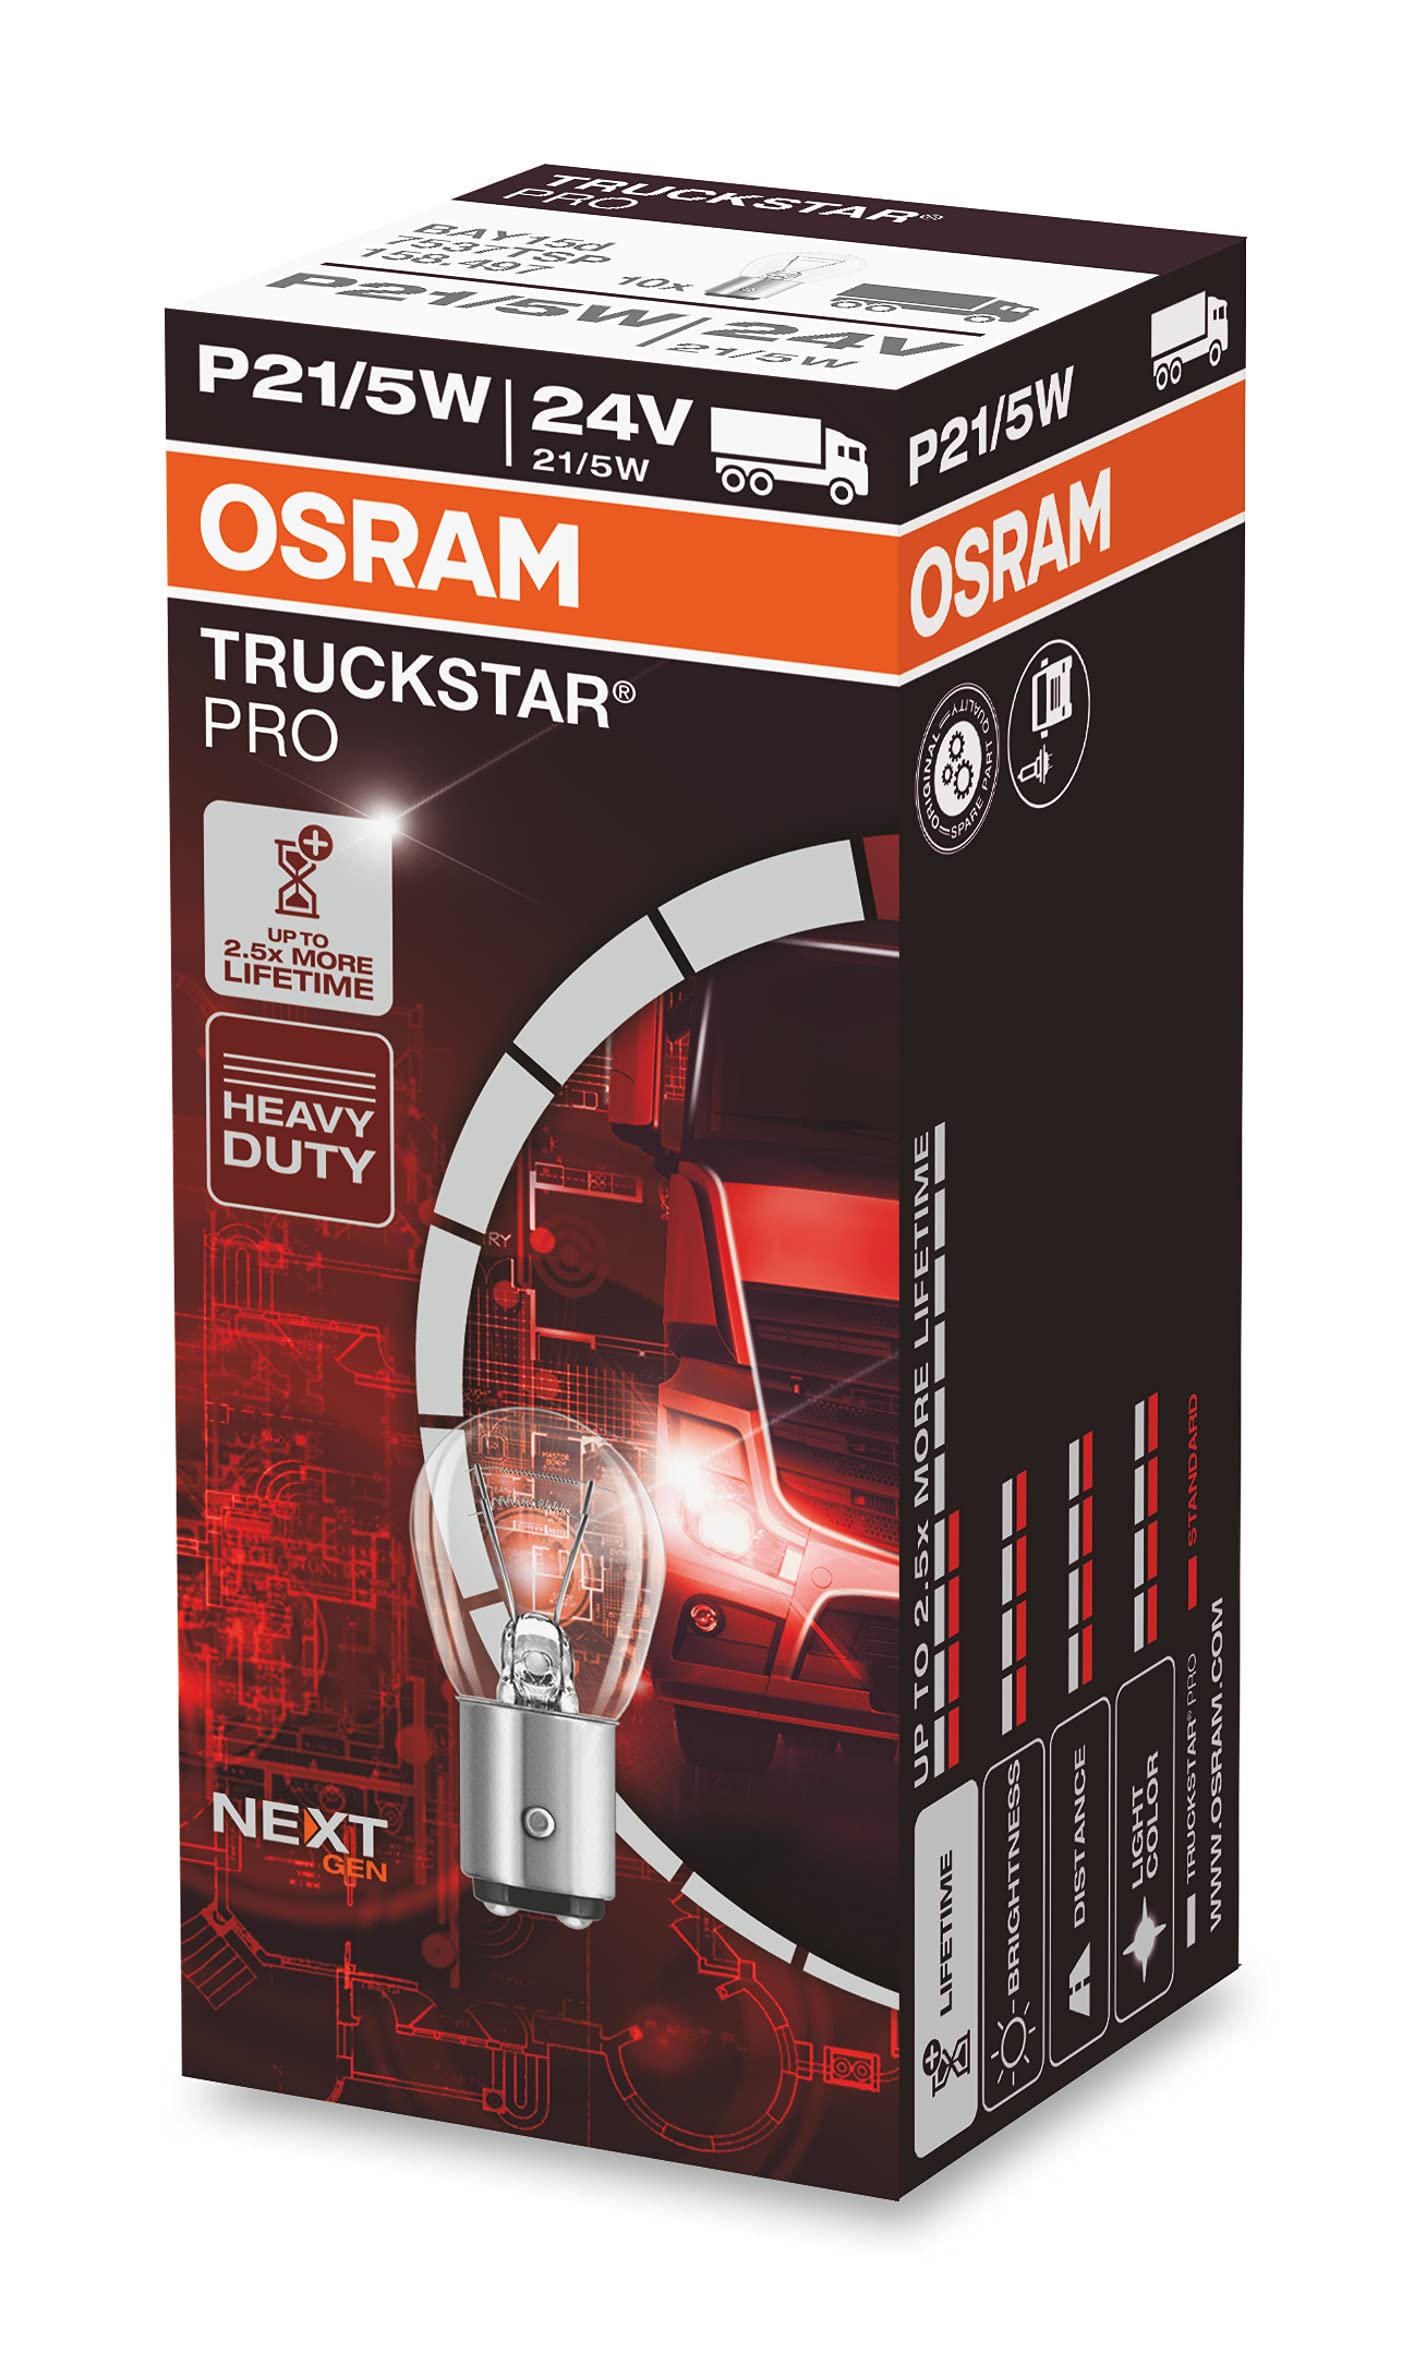 OSRAM TRUCKSTAR® PRO P21/5W, 120% mehr Helligkeit, Halogen-Signallampe, 7537TSP, 24V LKW Lampe, Faltschachtel (10 Lampen) von Osram